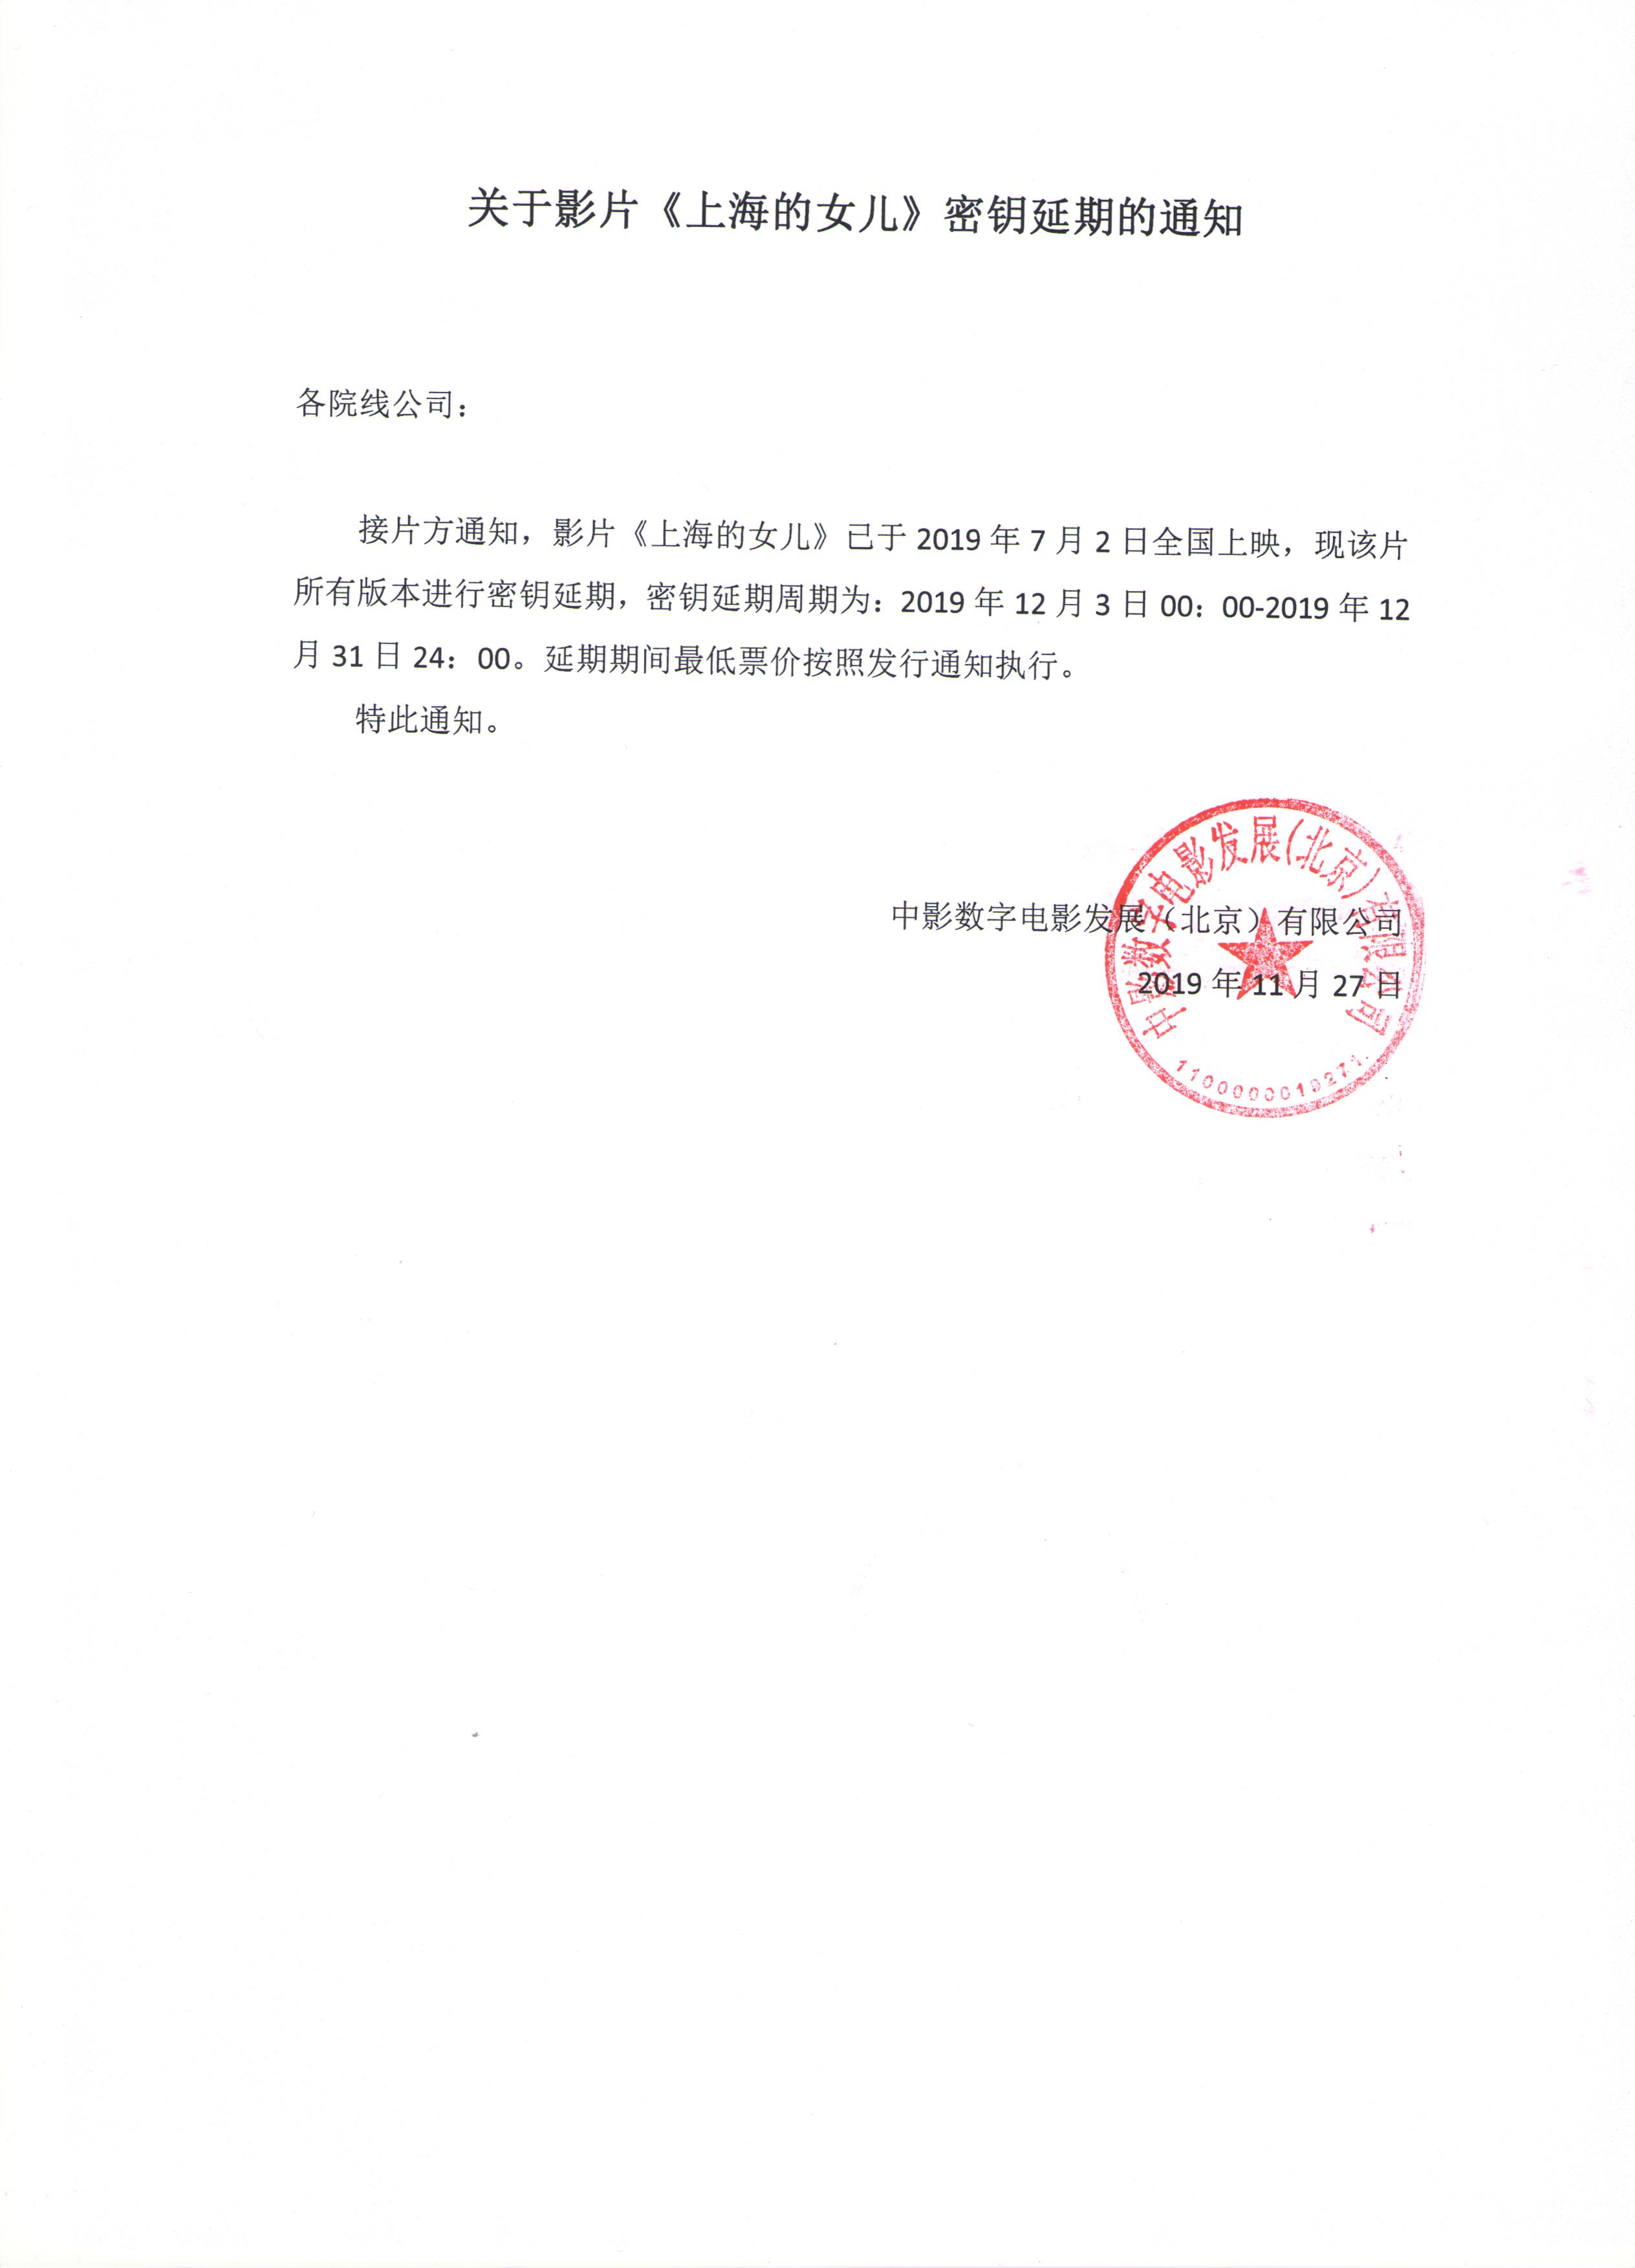 关于影片《上海的女儿》密钥延期的通知（延期至12月31日）